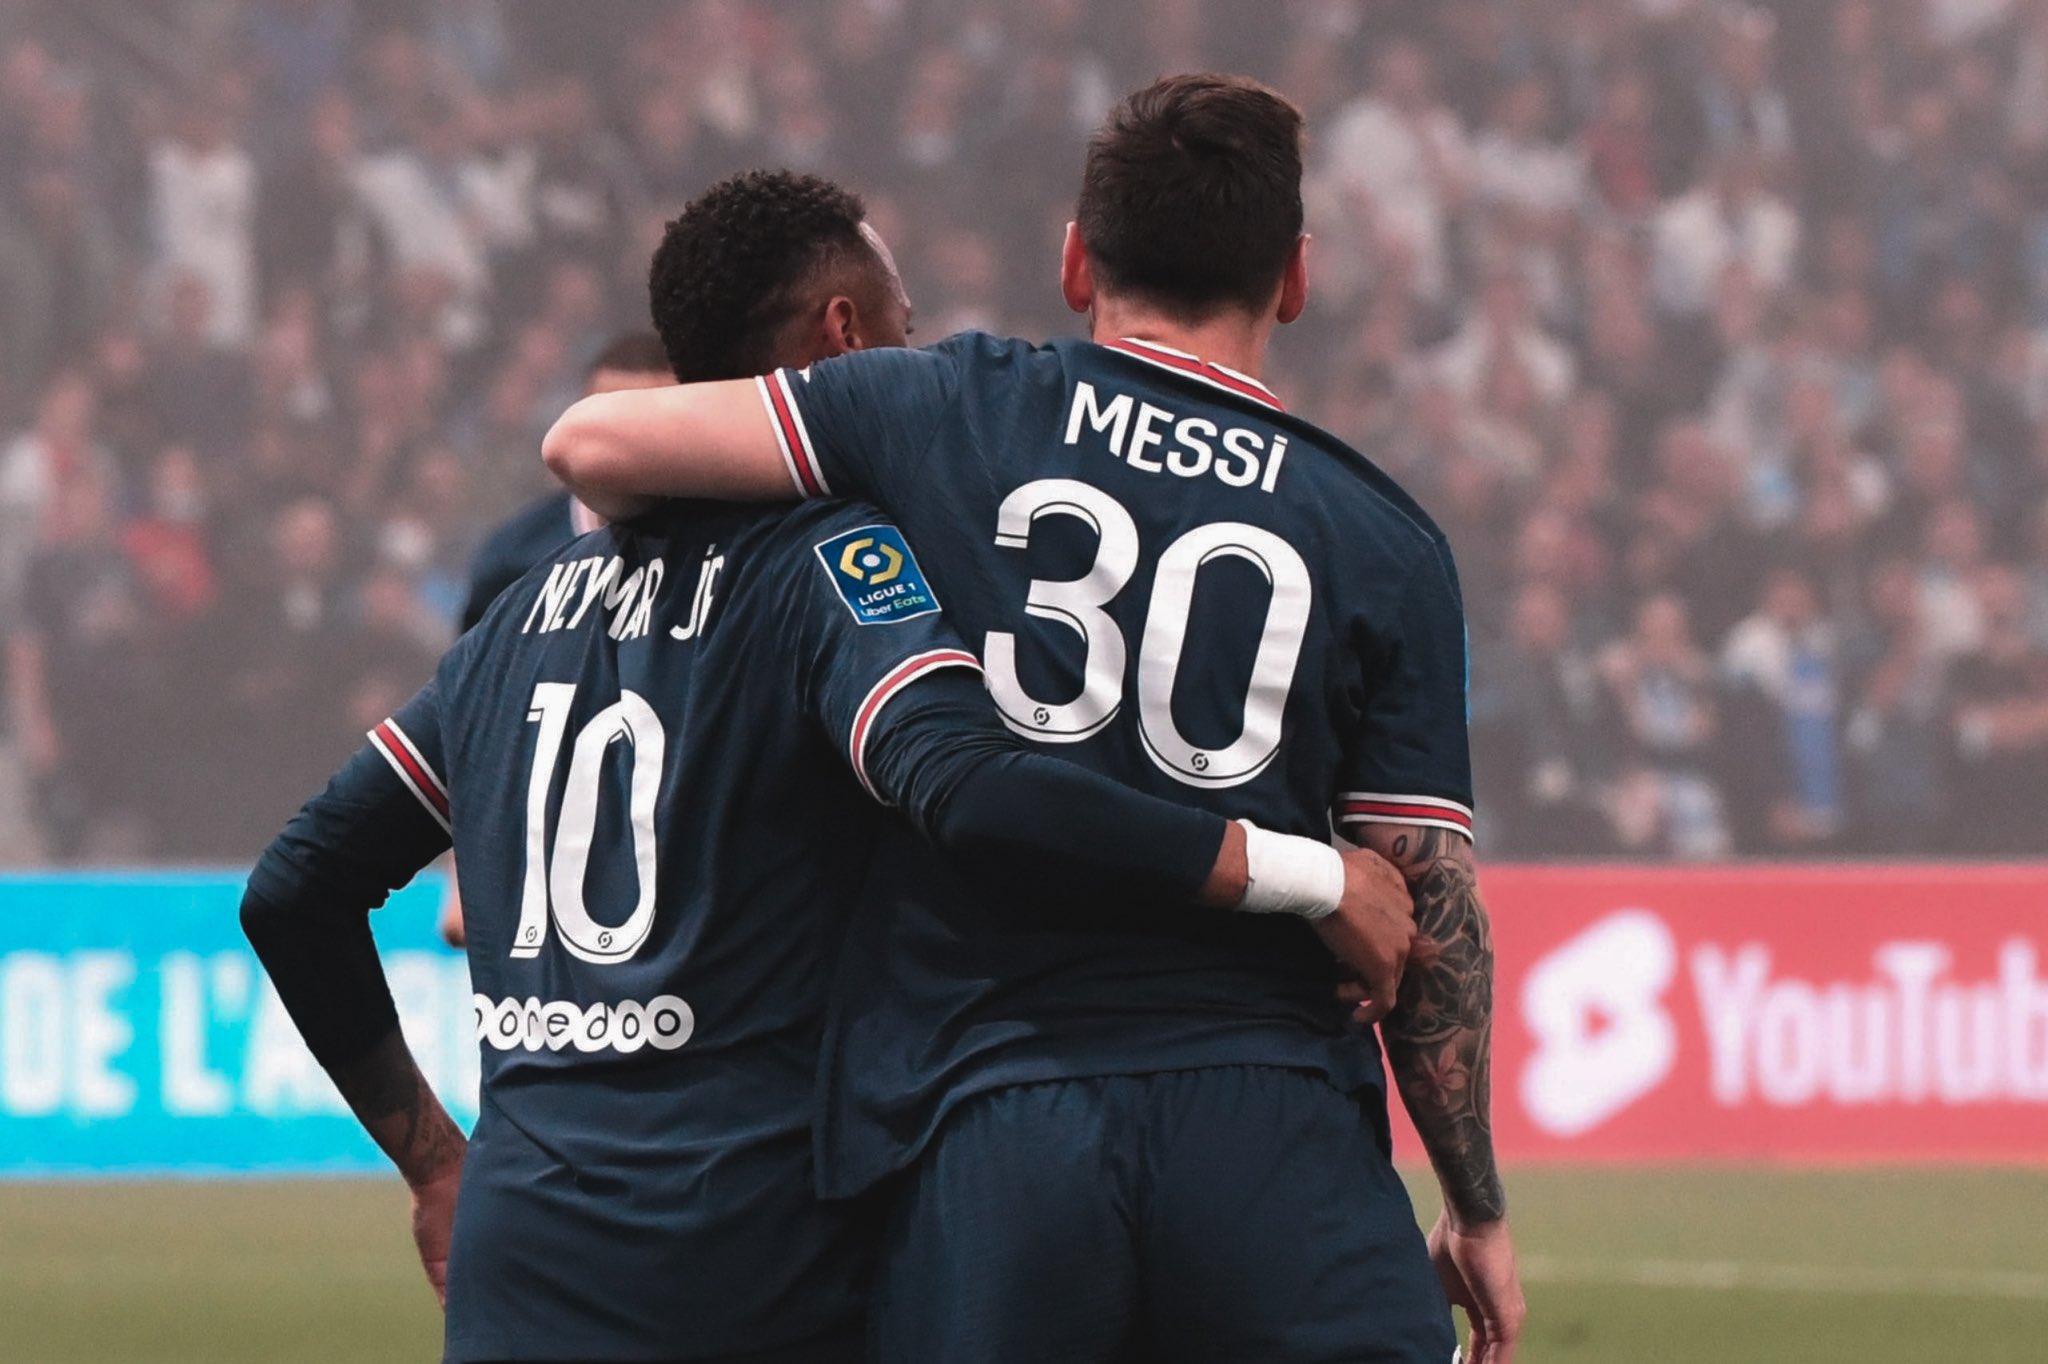 Mối quan hệ giữa Neymar và Messi đã trở thành một trong những câu chuyện đáng chú ý nhất trong giới bóng đá. Tải ngay ảnh về mối quan hệ này để hiểu rõ hơn về sự gắn kết và tình bạn đằng sau sân cỏ của hai ngôi sao này.